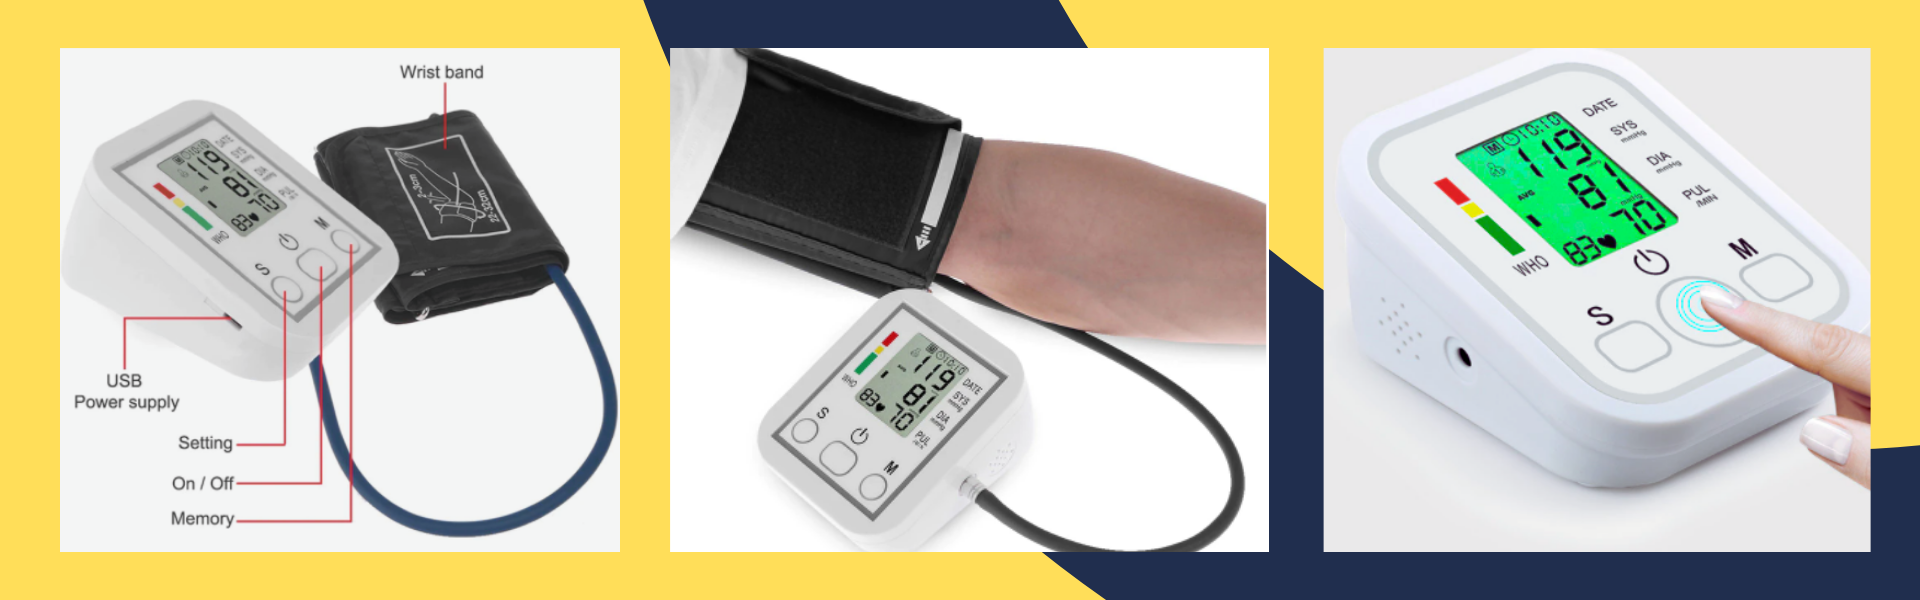 Đồng hồ đo huyết áp kỹ thuật số Tonometer